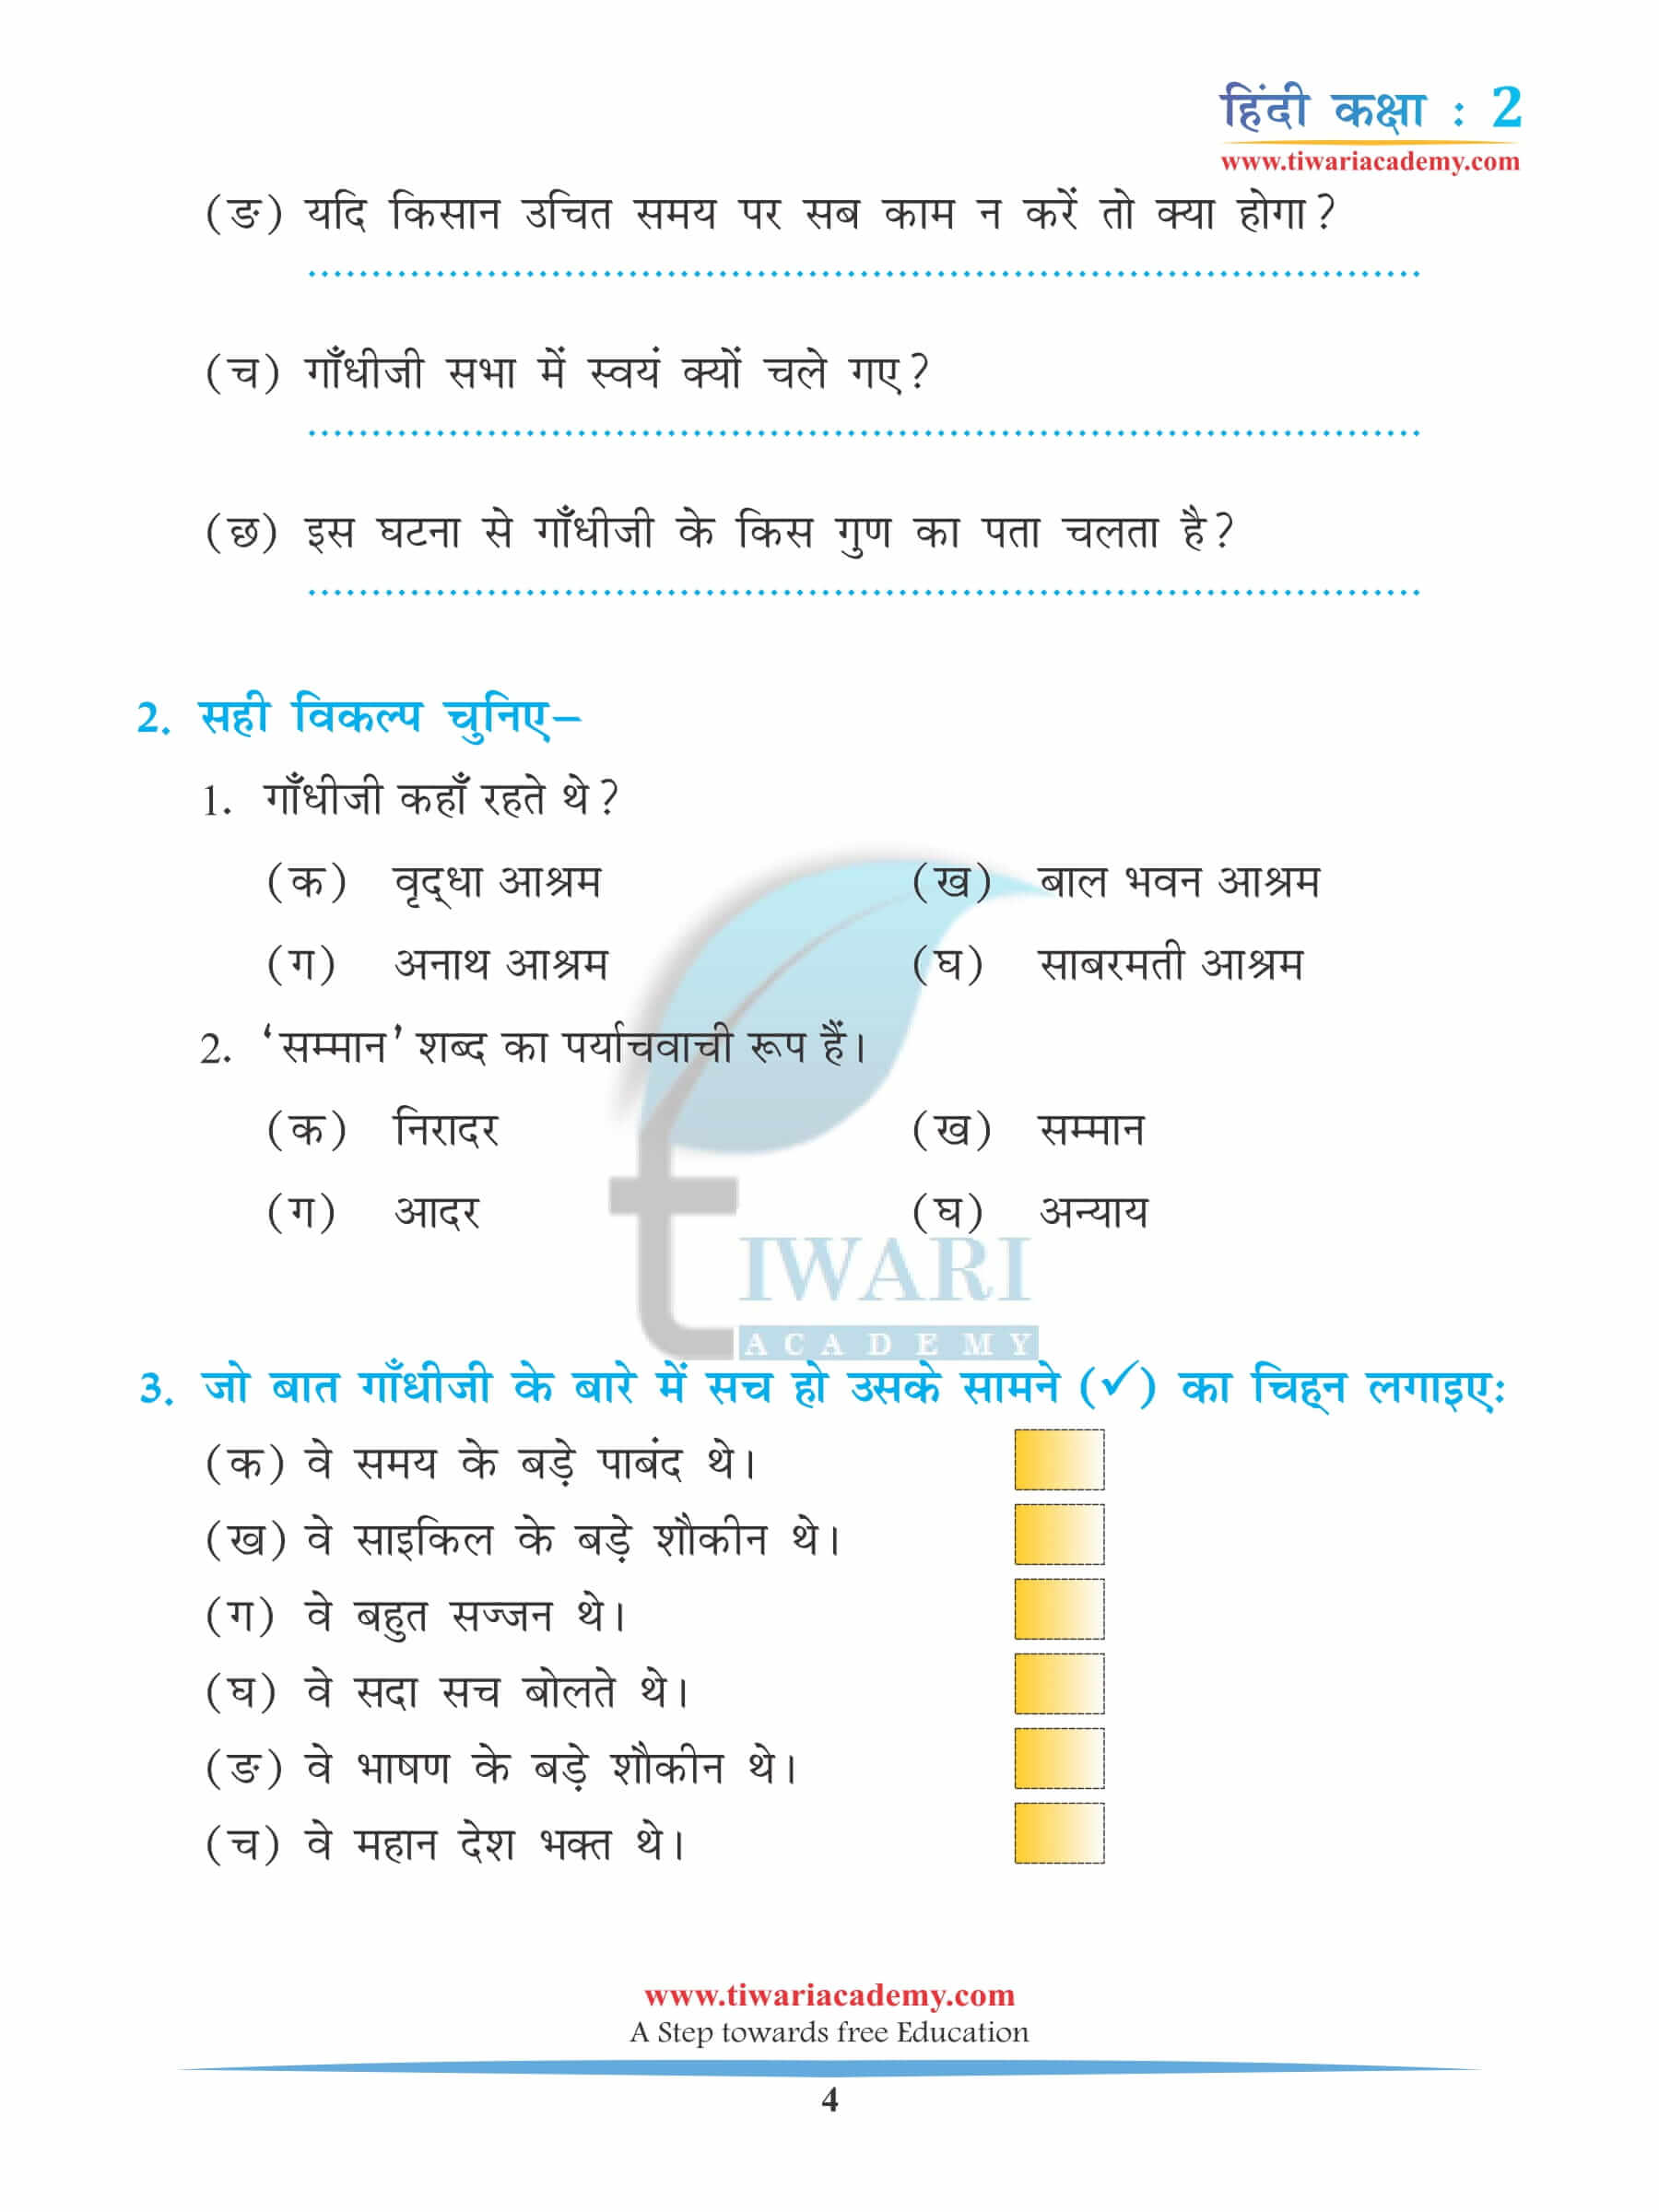 कक्षा 2 हिंदी अध्याय 8 अभ्यास के लिए पुस्तक